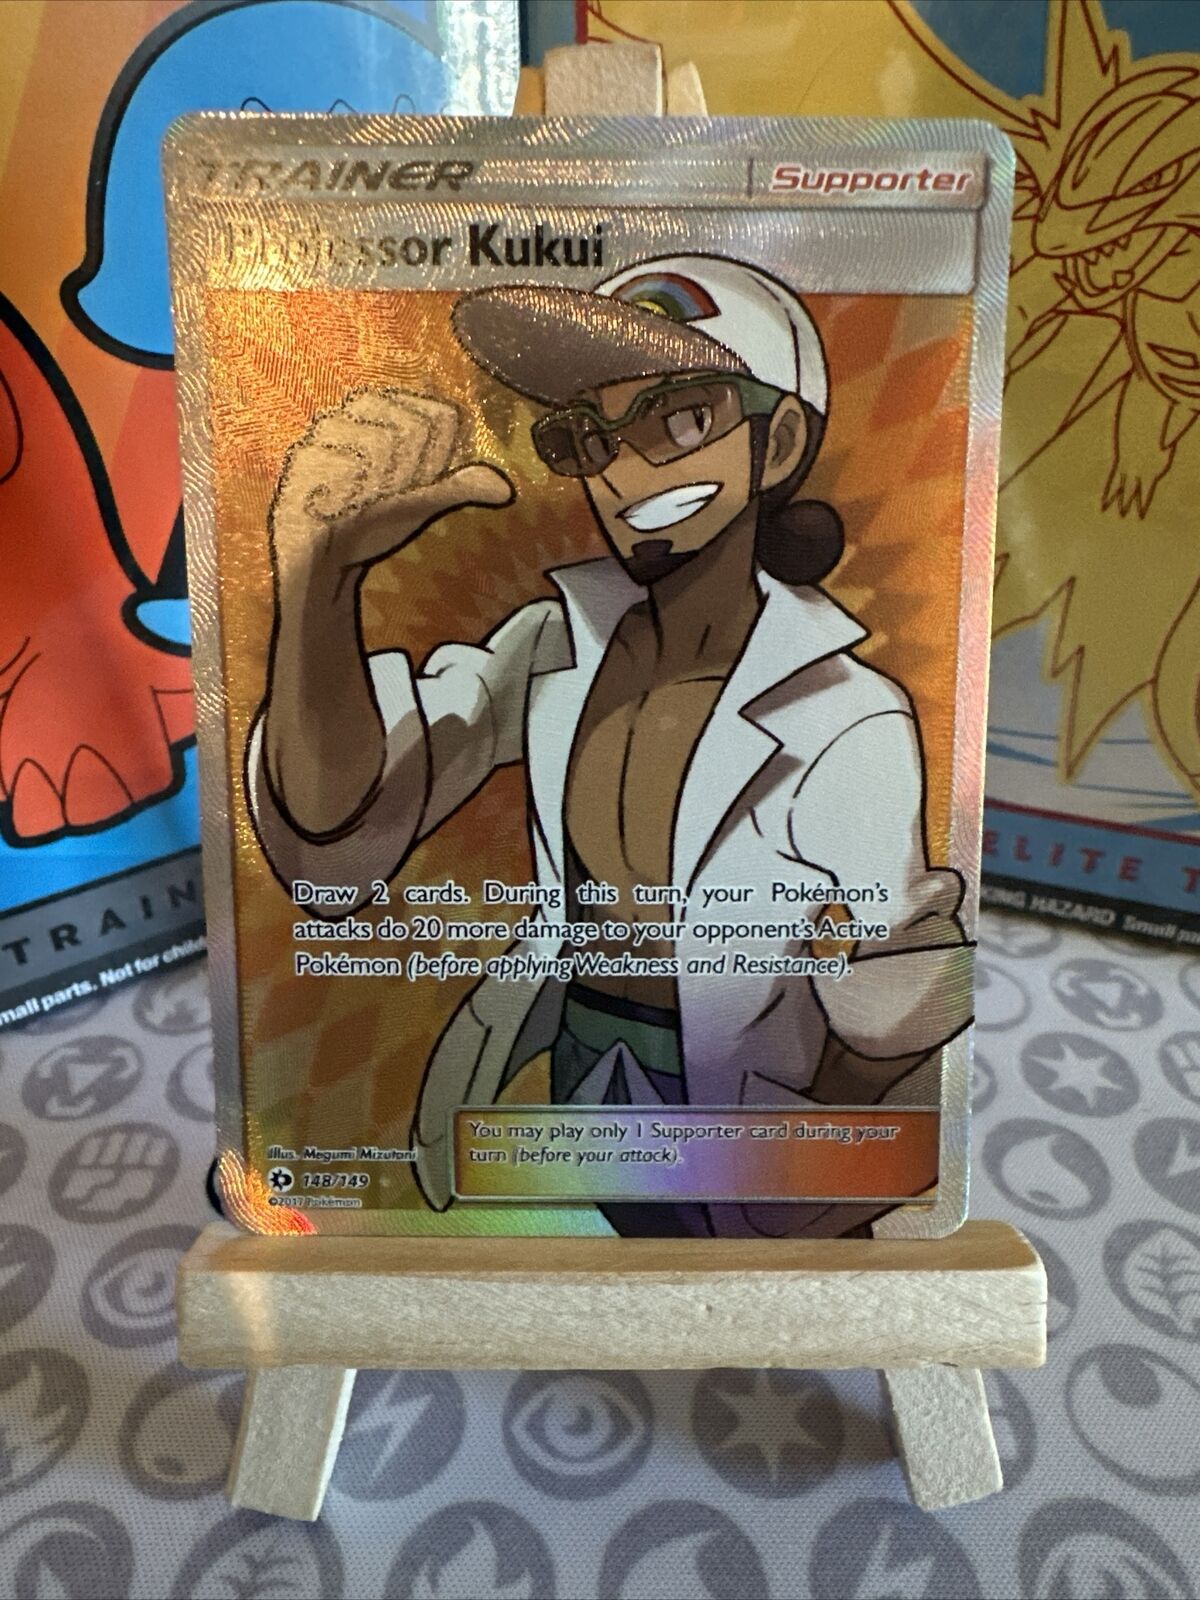 Pokémon TCG Professor Kukui Sun & Moon 148/149 Holo Full Art Ultra Rare